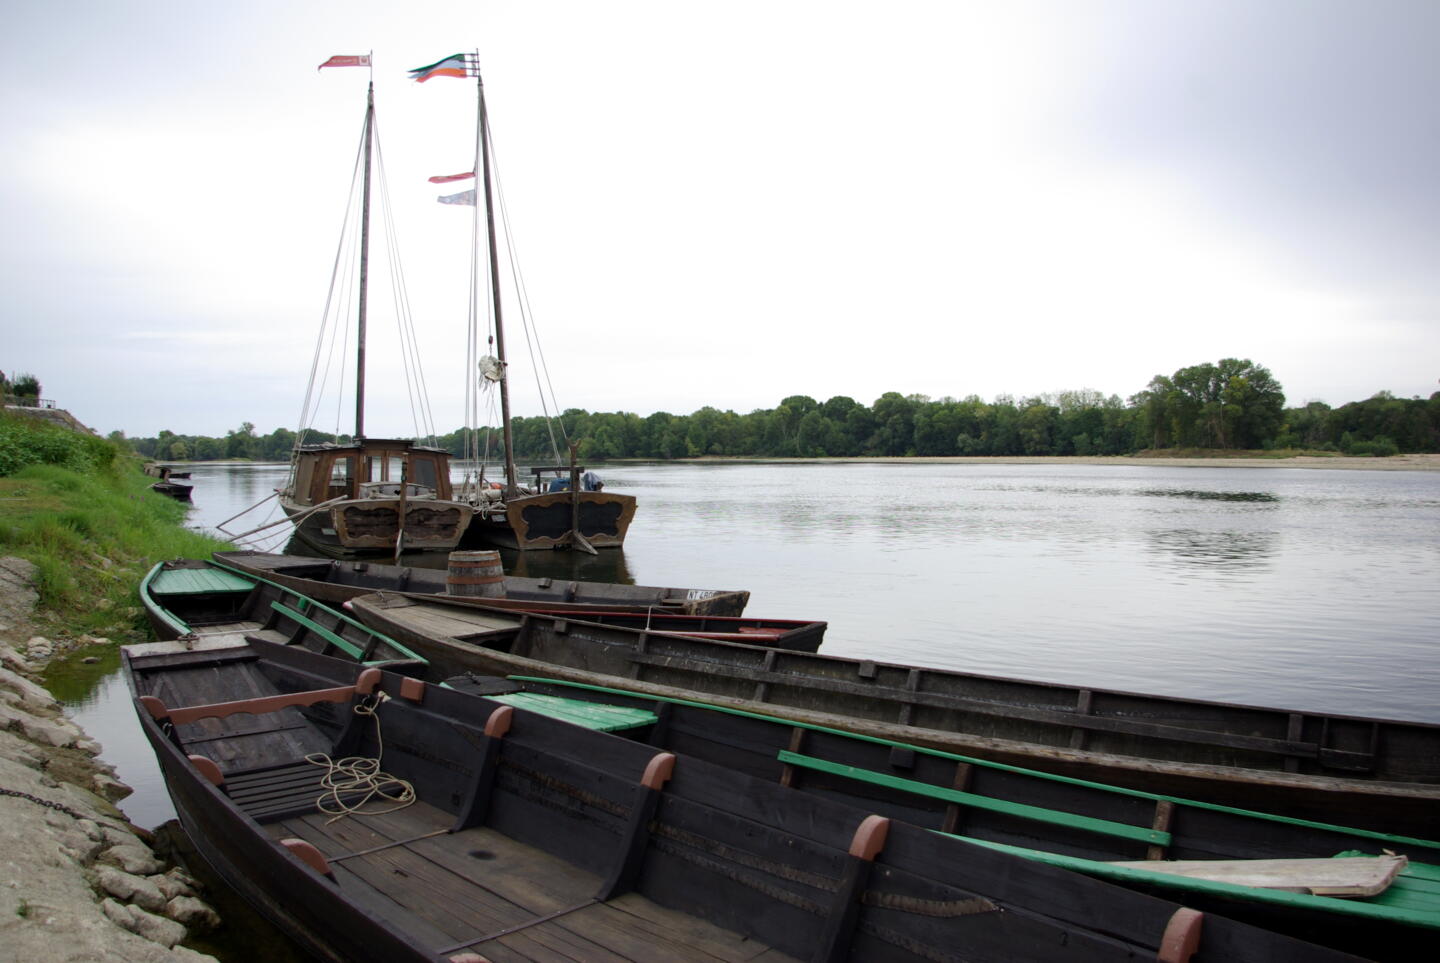 Barcos tradicionales amarrados en el Loira, listos para el Festival de la Loire, que celebra el patrimonio fluvial.